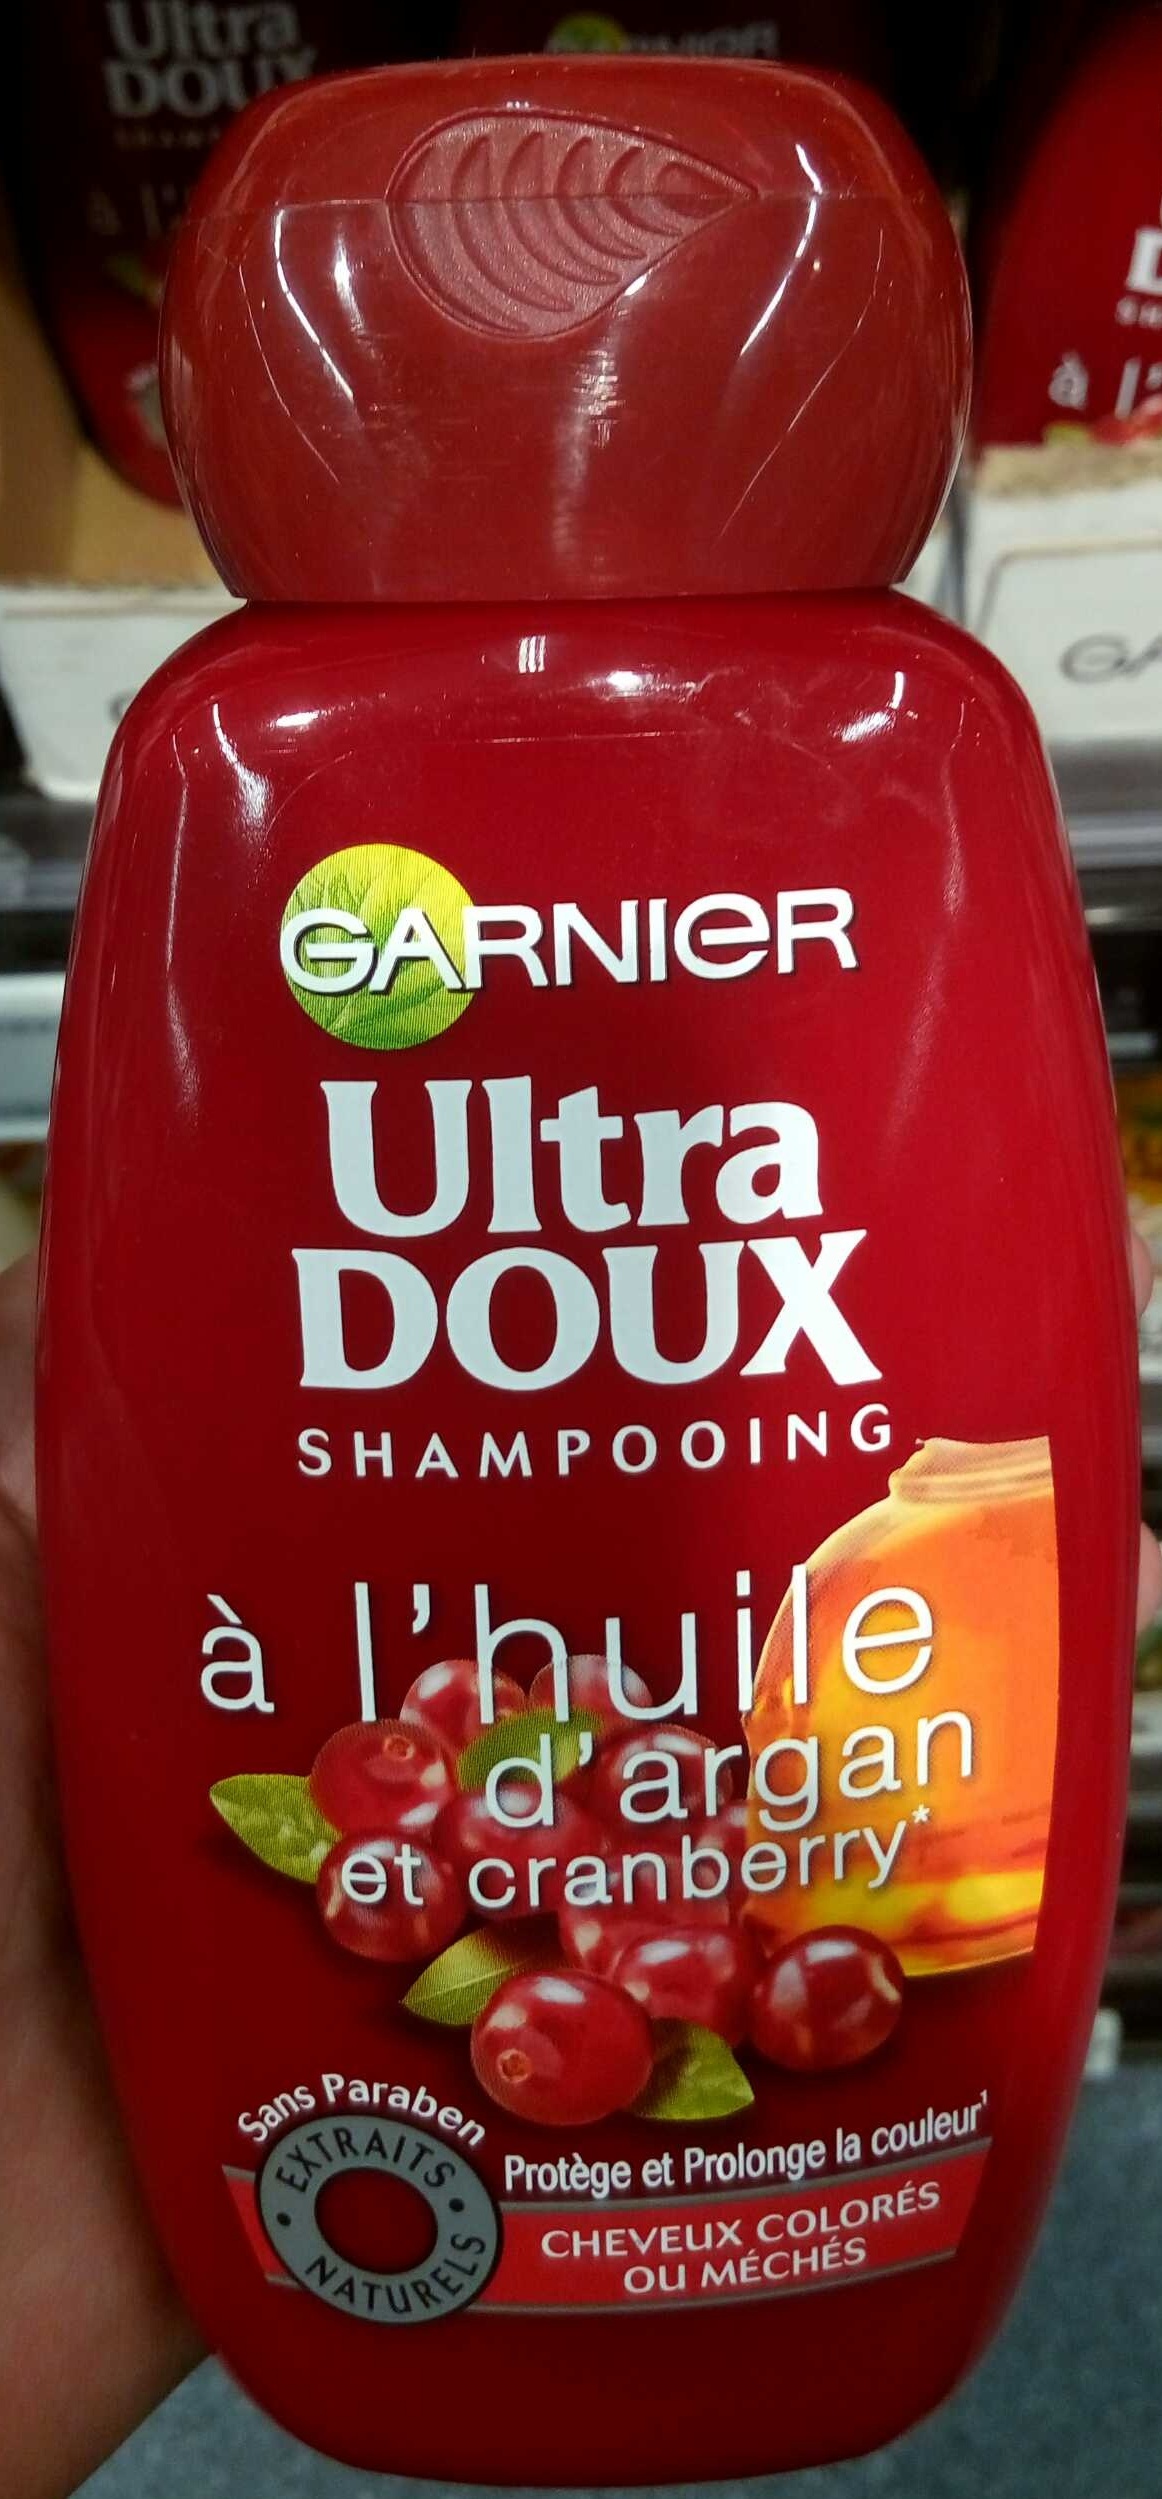 Ultra Doux Shampooing à l'huile d'argan et cranberry - Product - fr